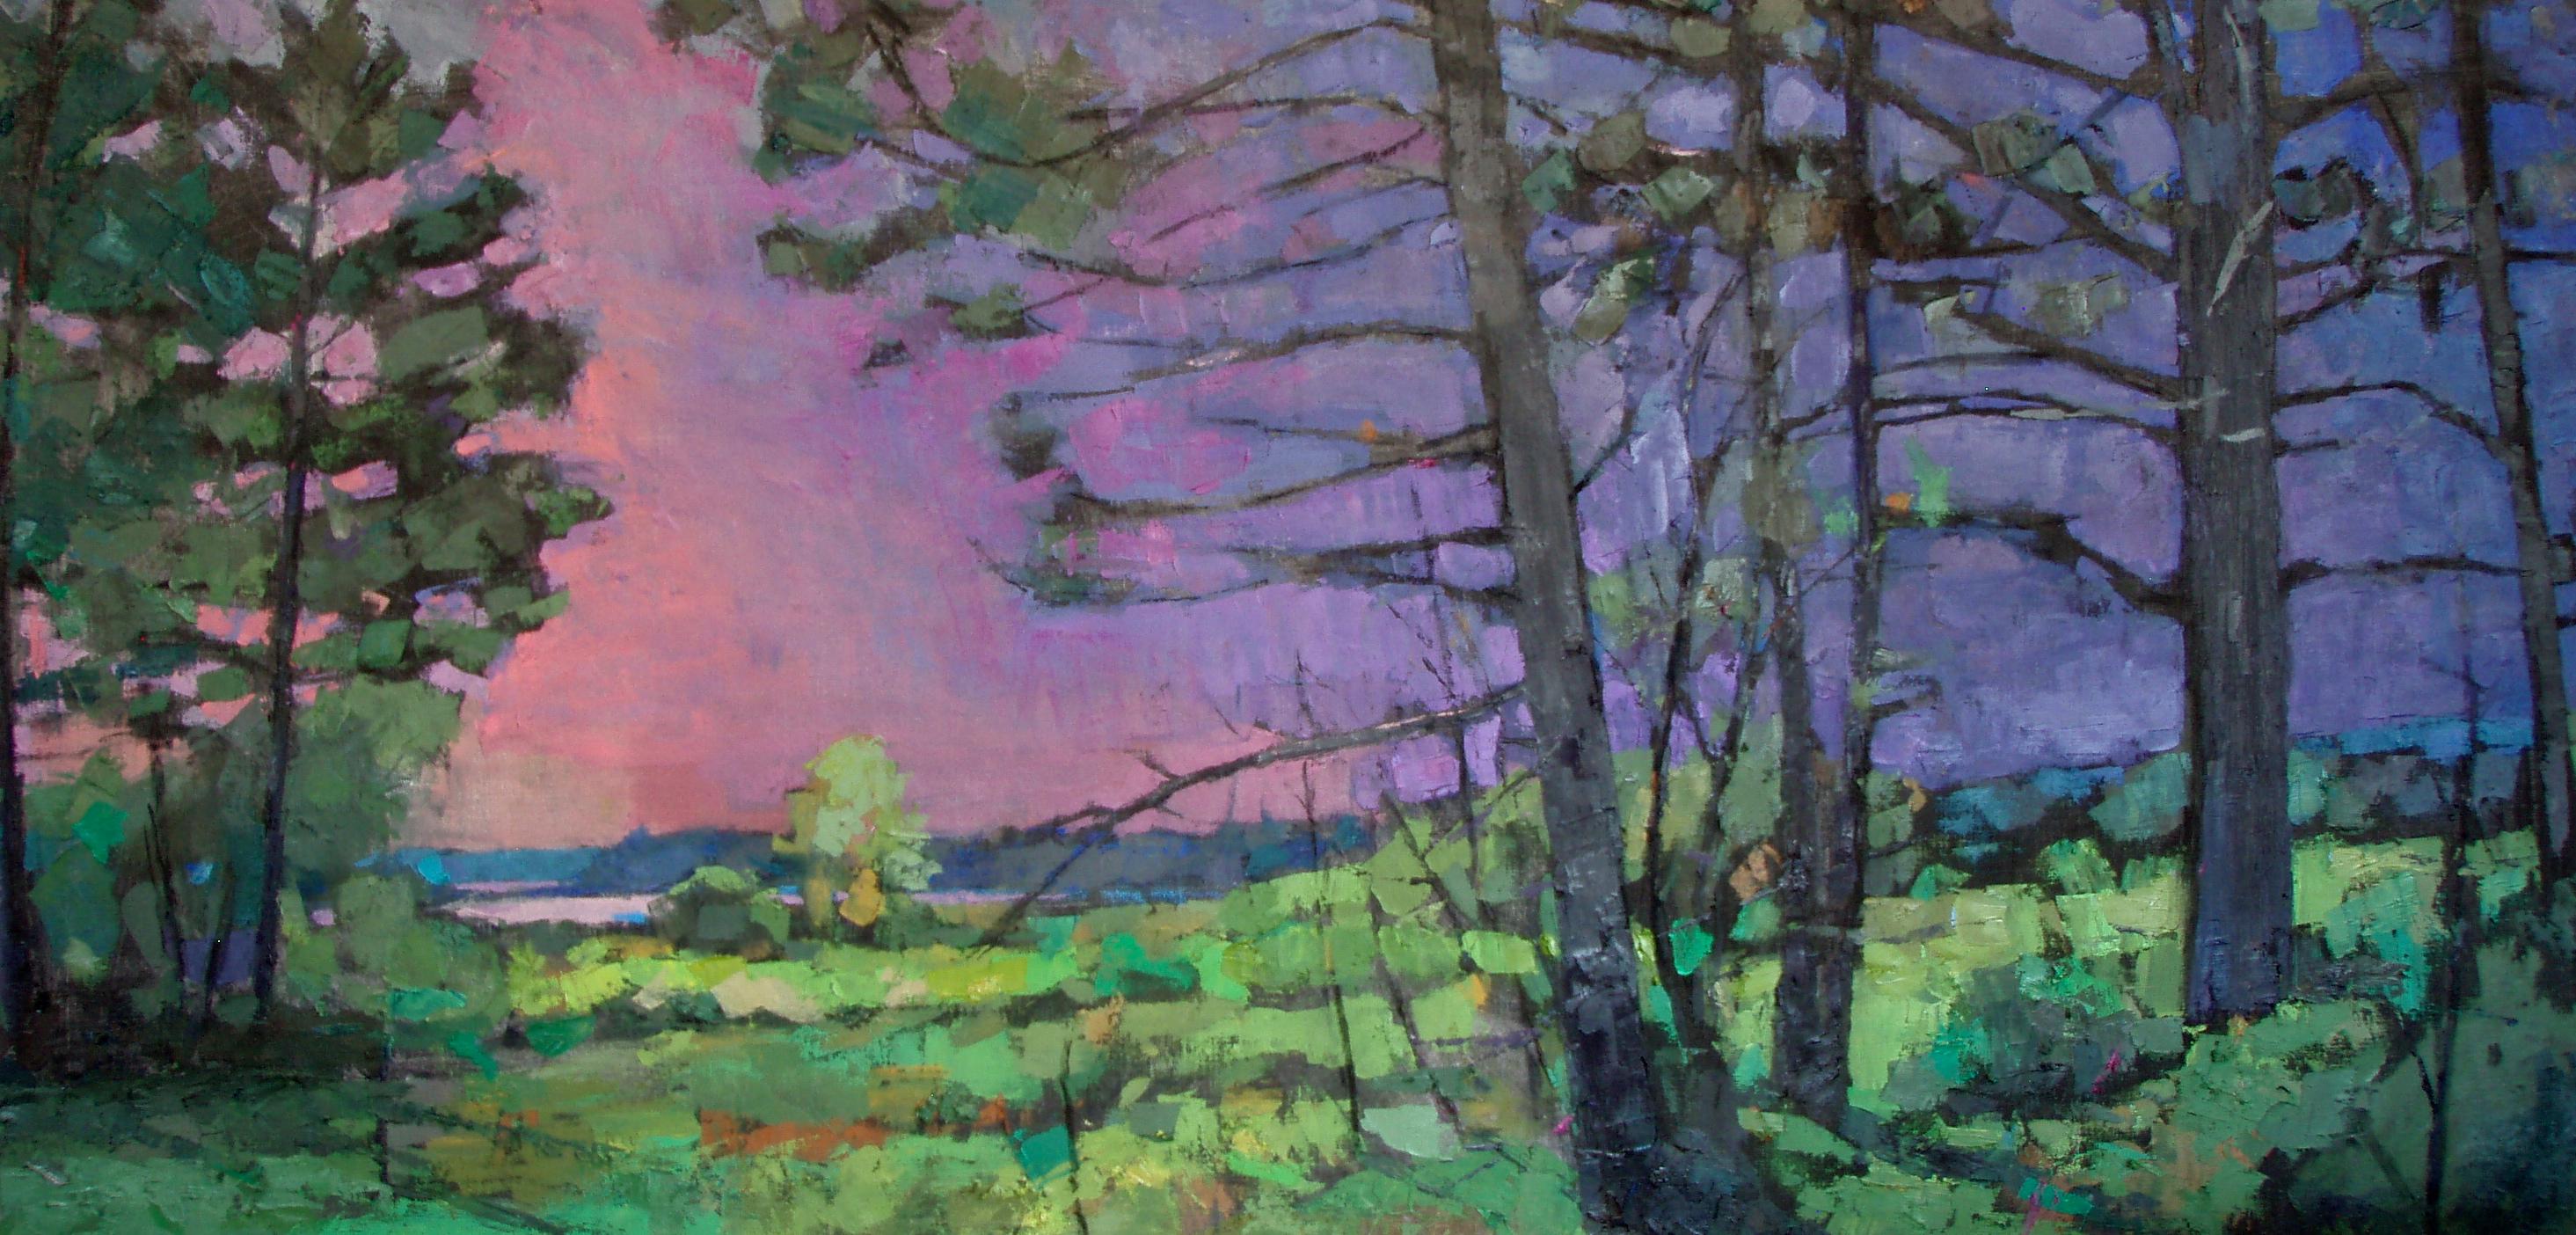 Landscape Painting Larry Horowitz - Peinture à l'huile « Moore Habitat II » à travers les bois, eau et ciel rose au loin